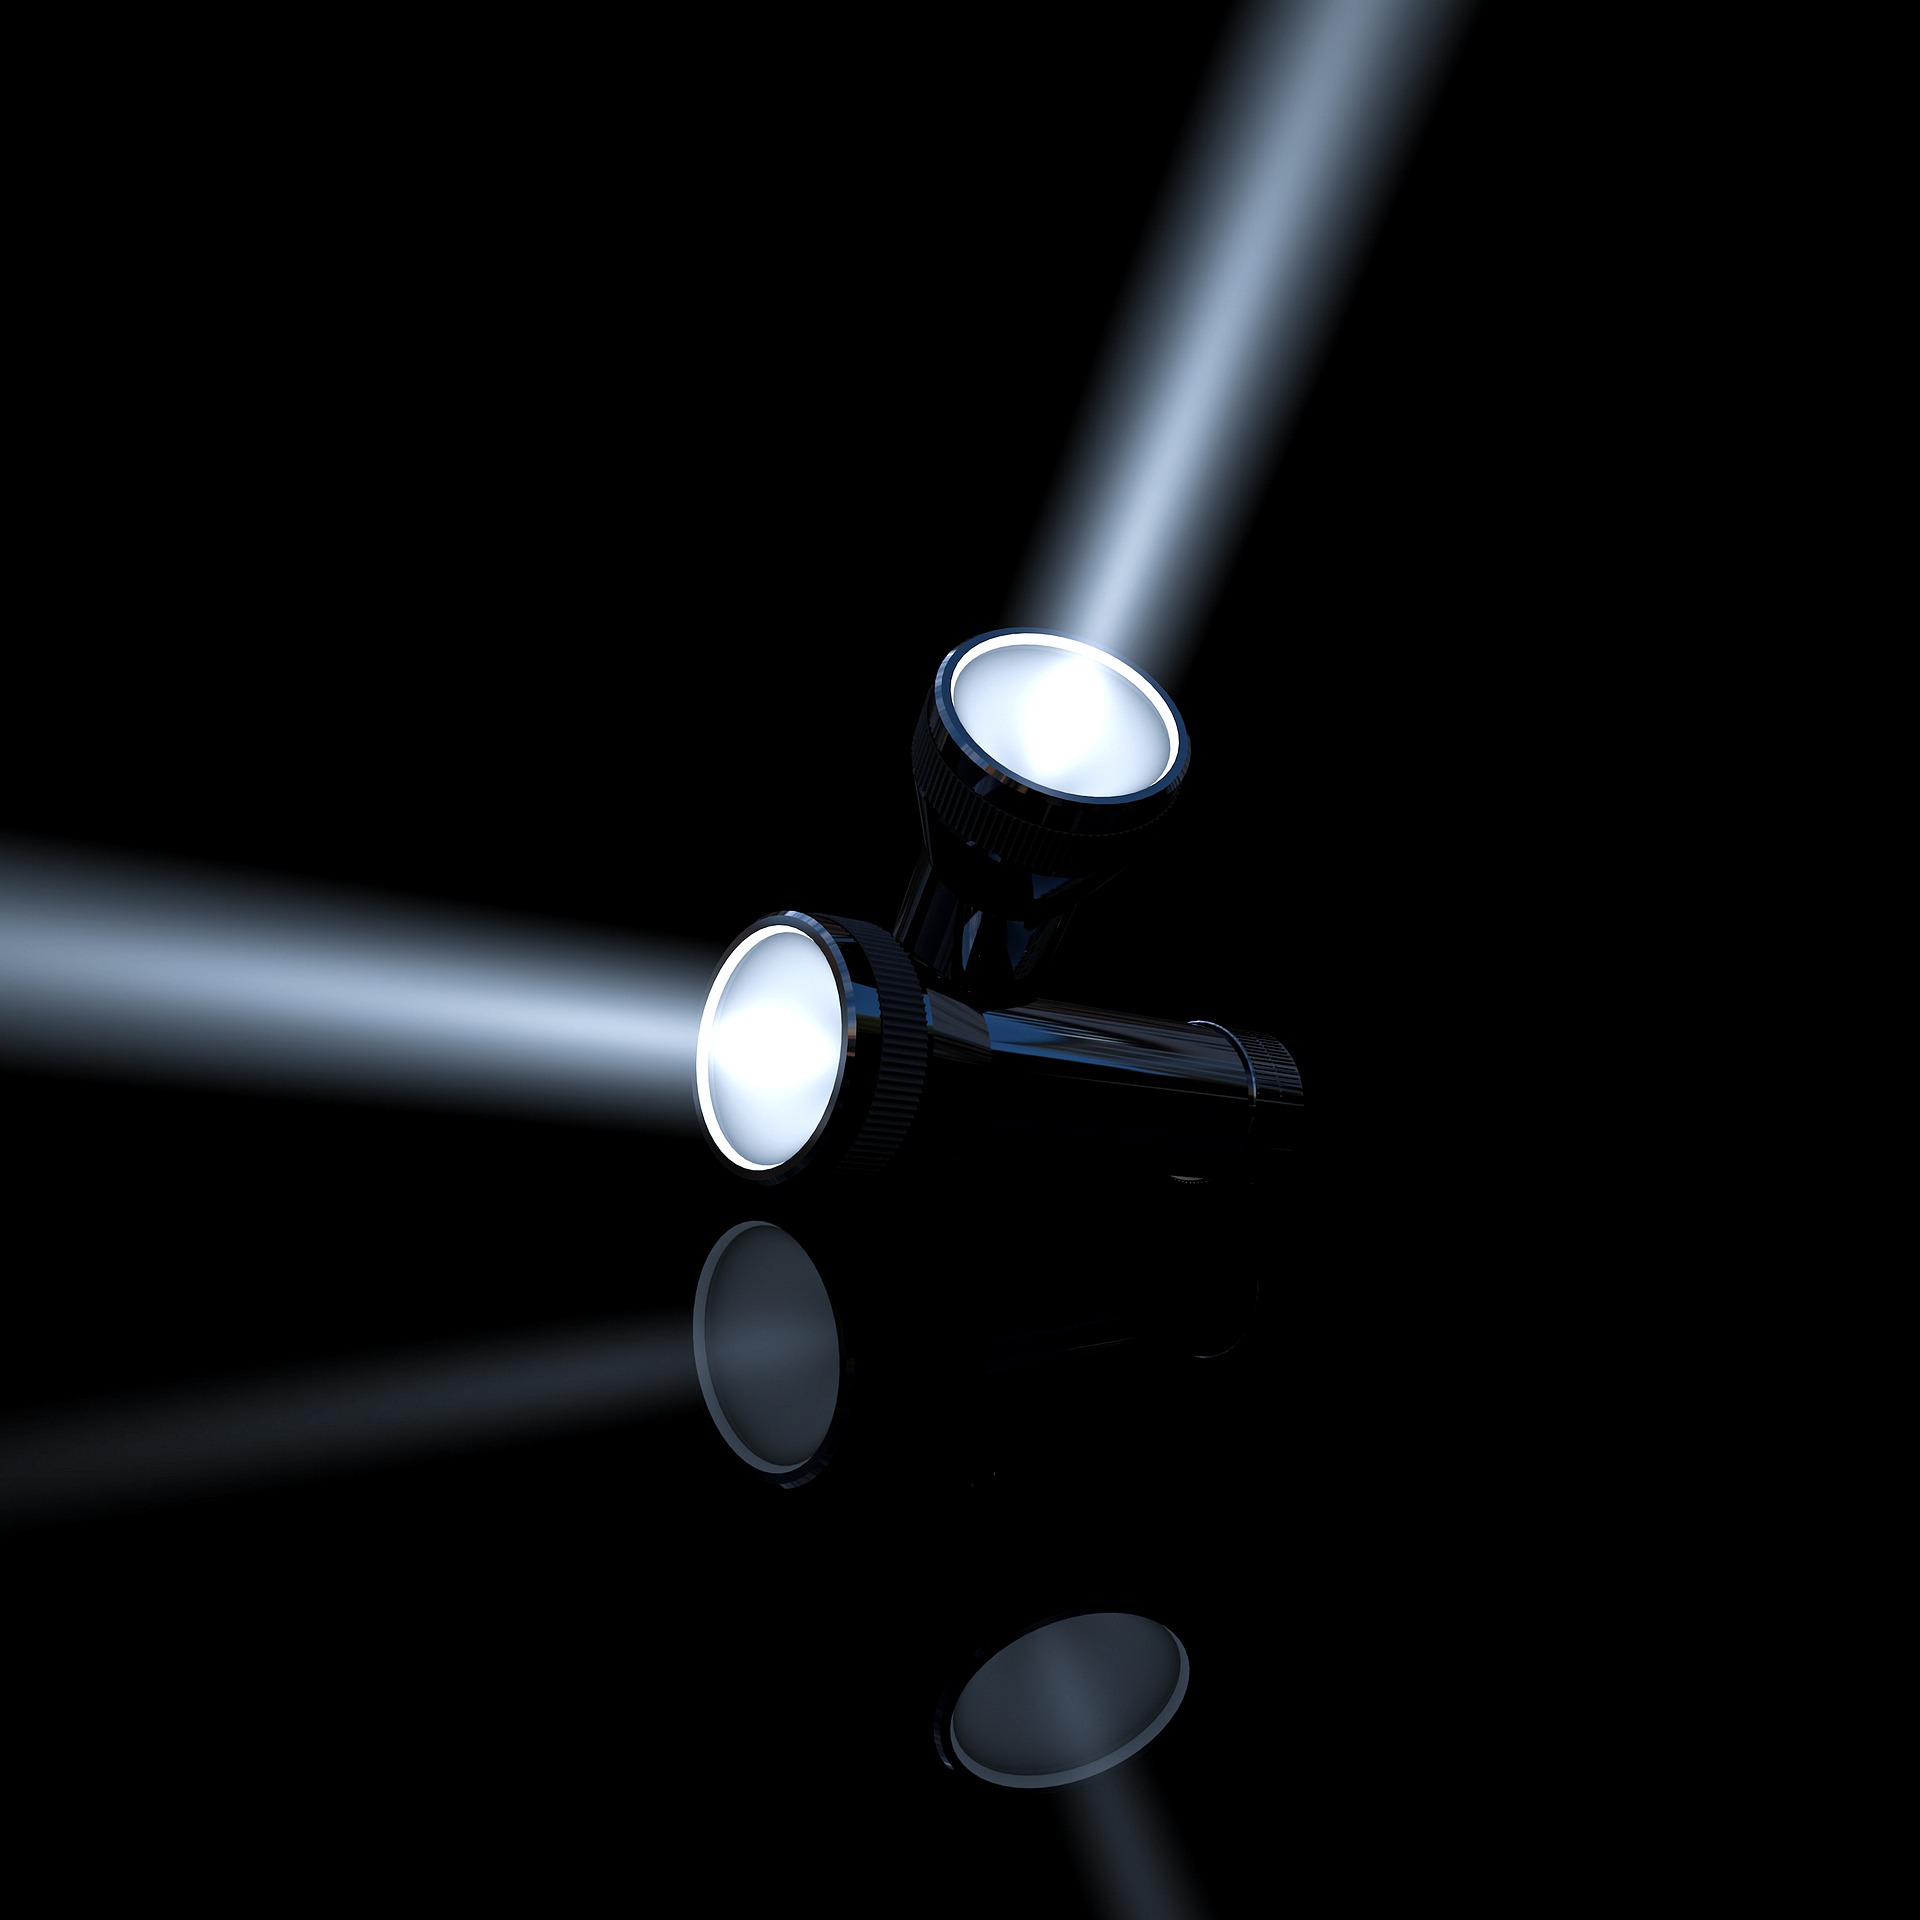 flashlight-6924486_1920 (c) Pixabay